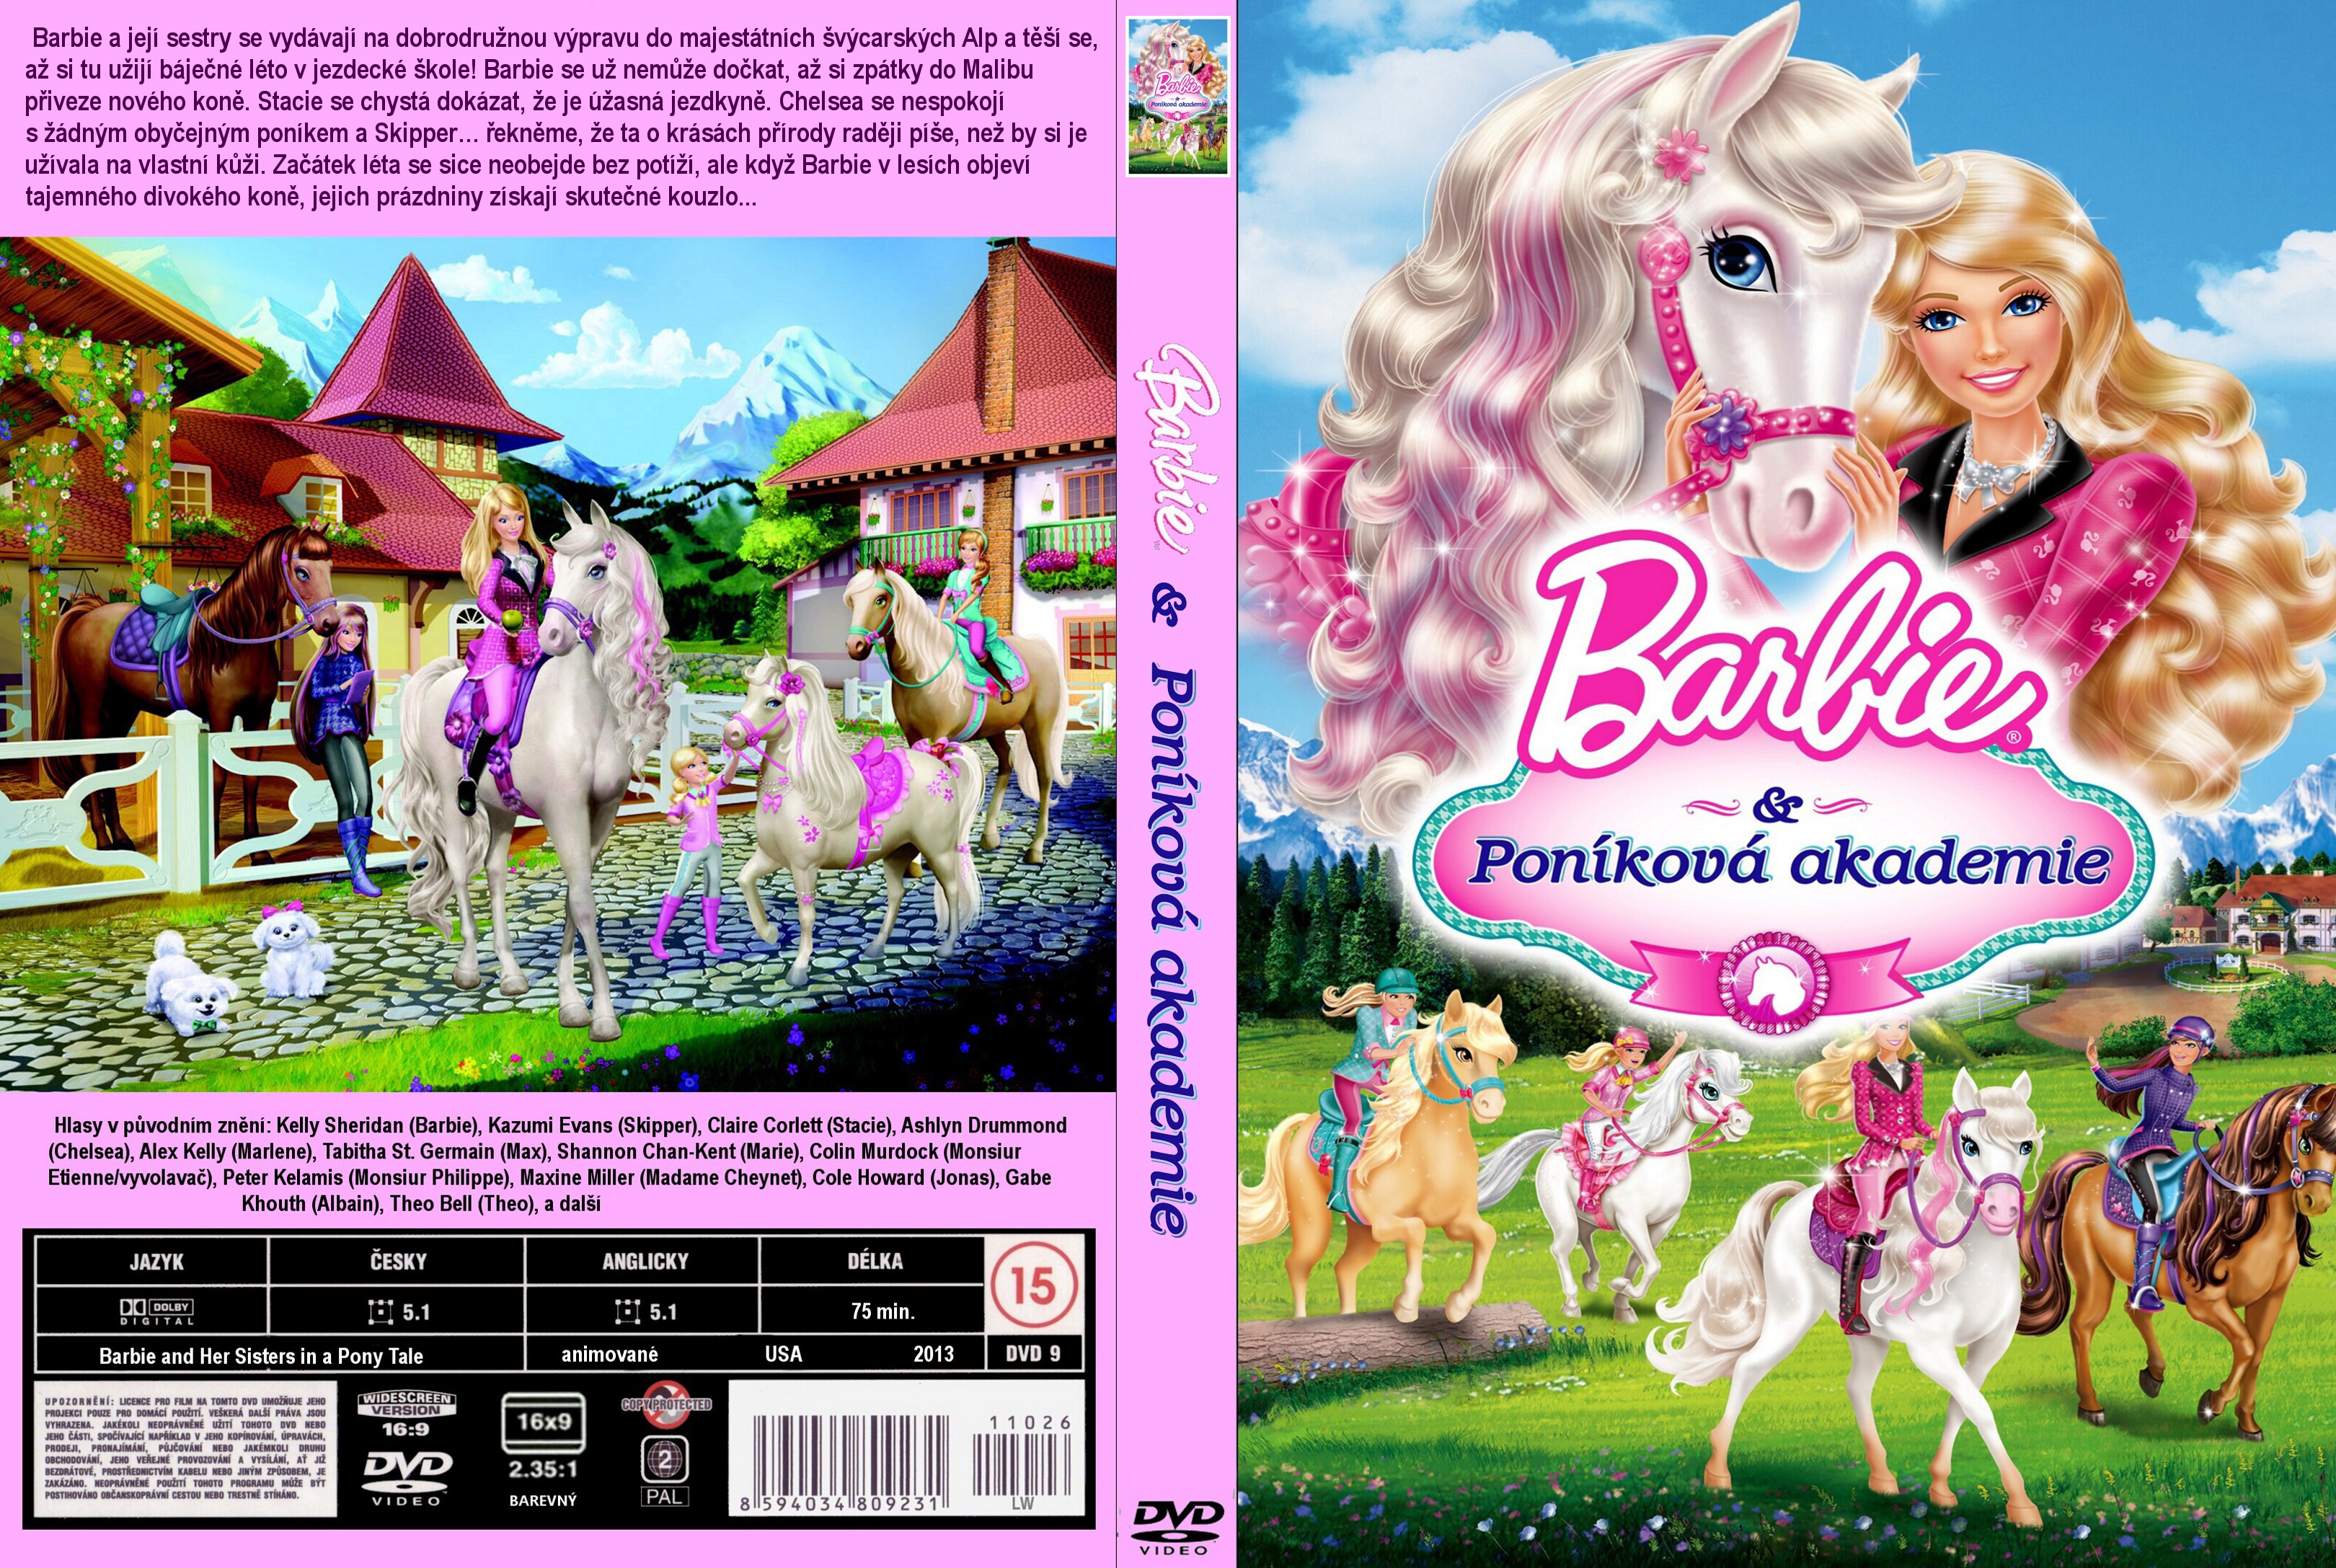 barbie and a pony tale